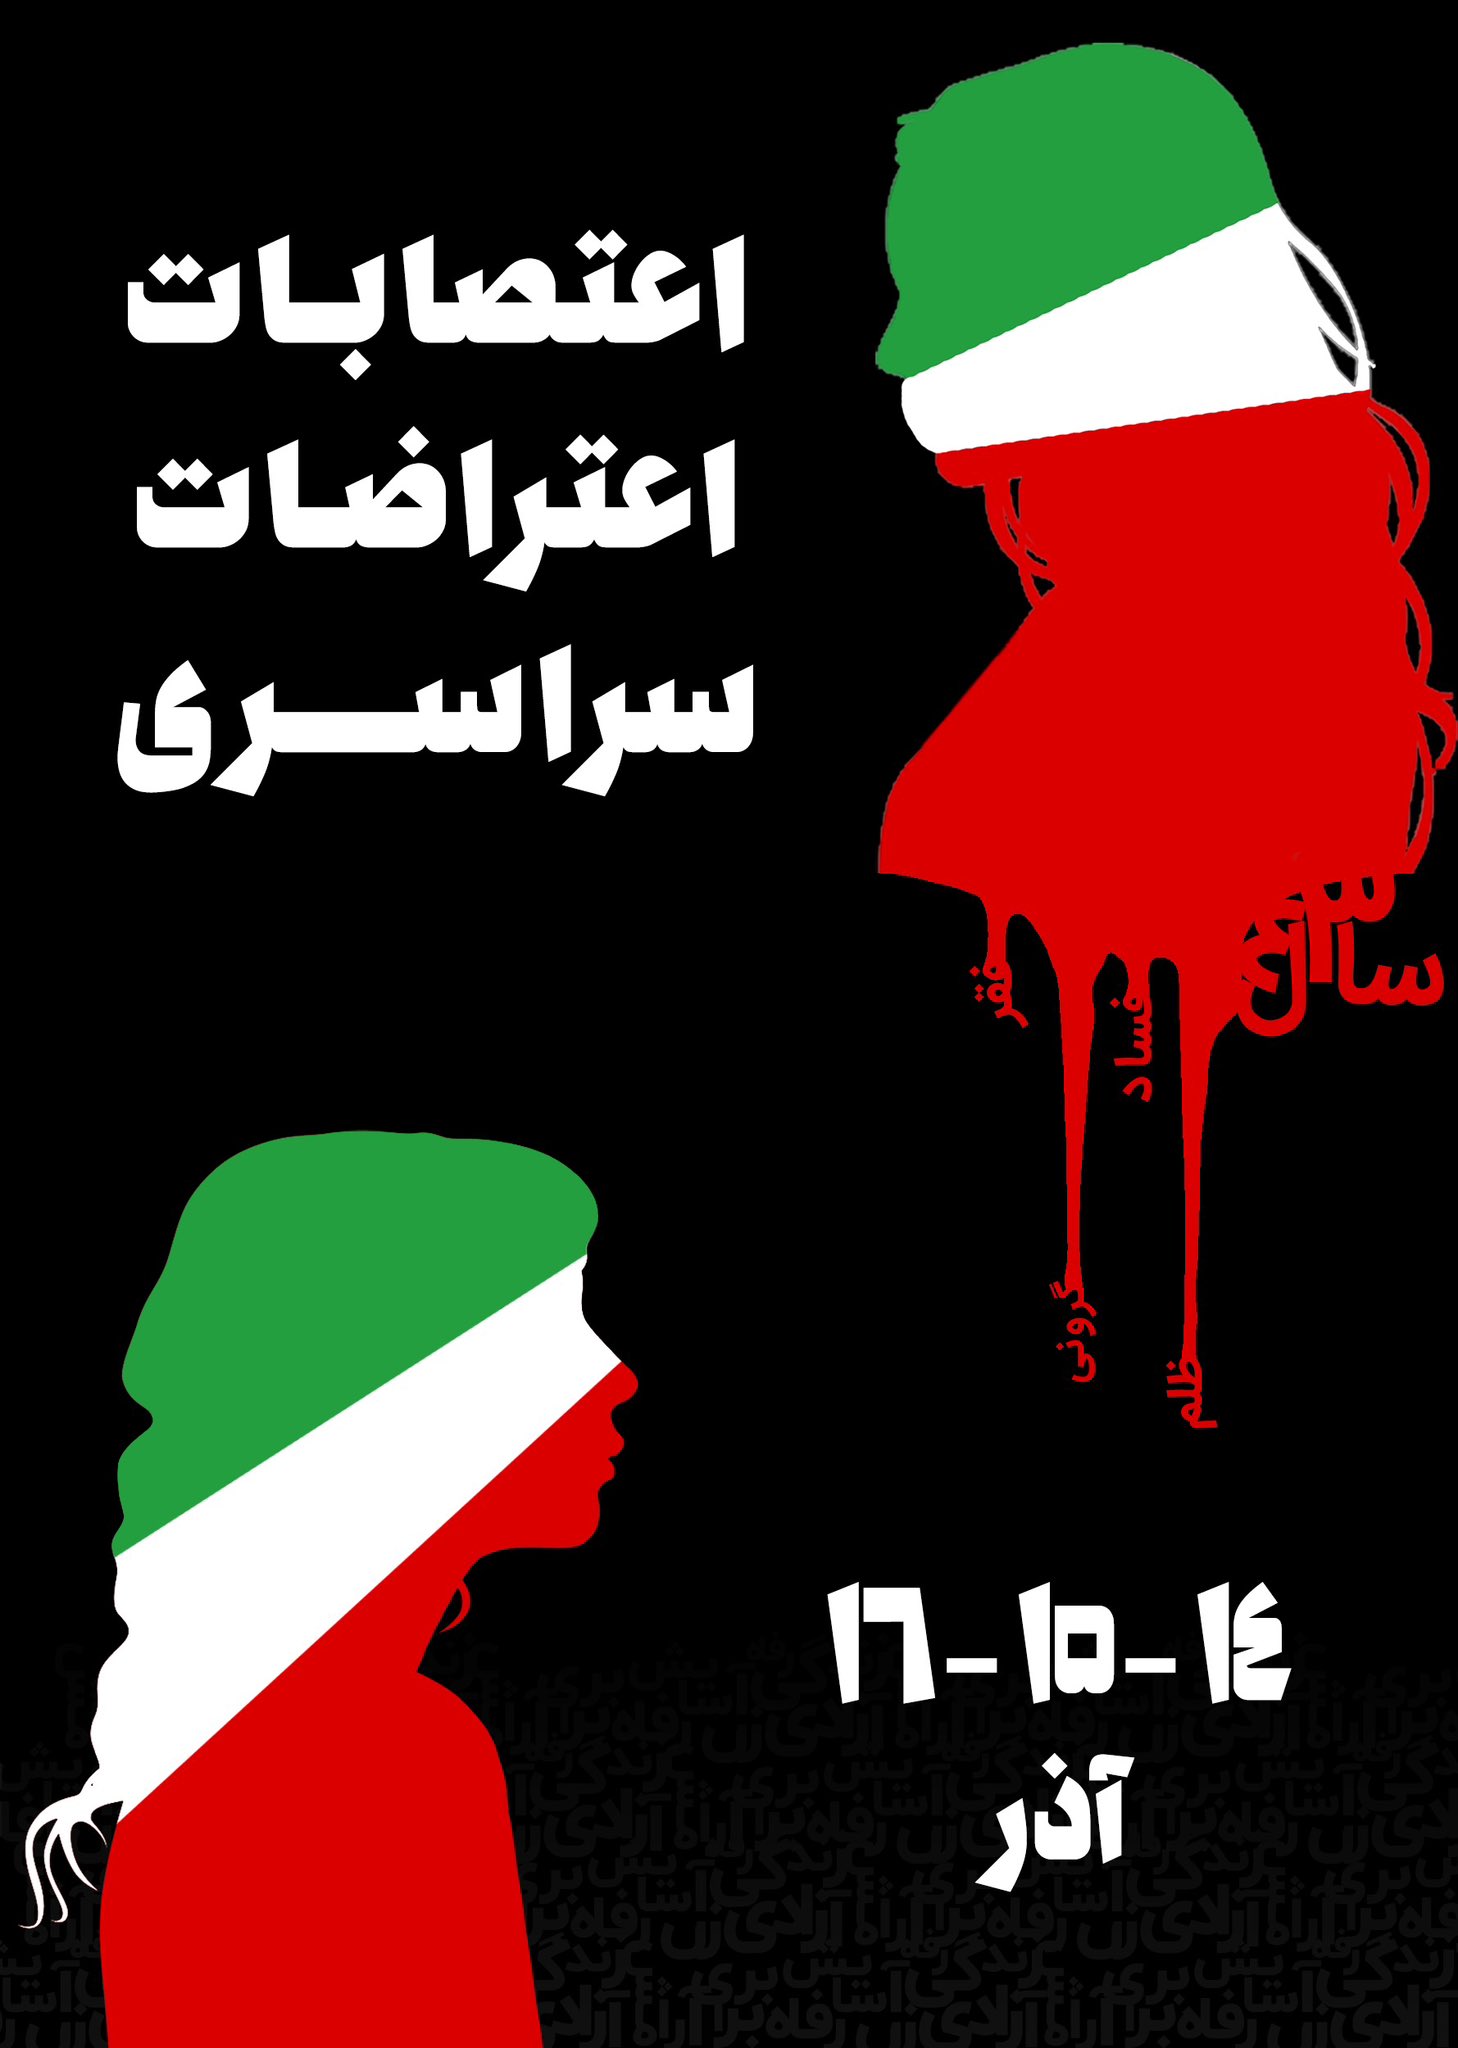 Iran Revolution Art No. FixW1n3XgAgWiuP